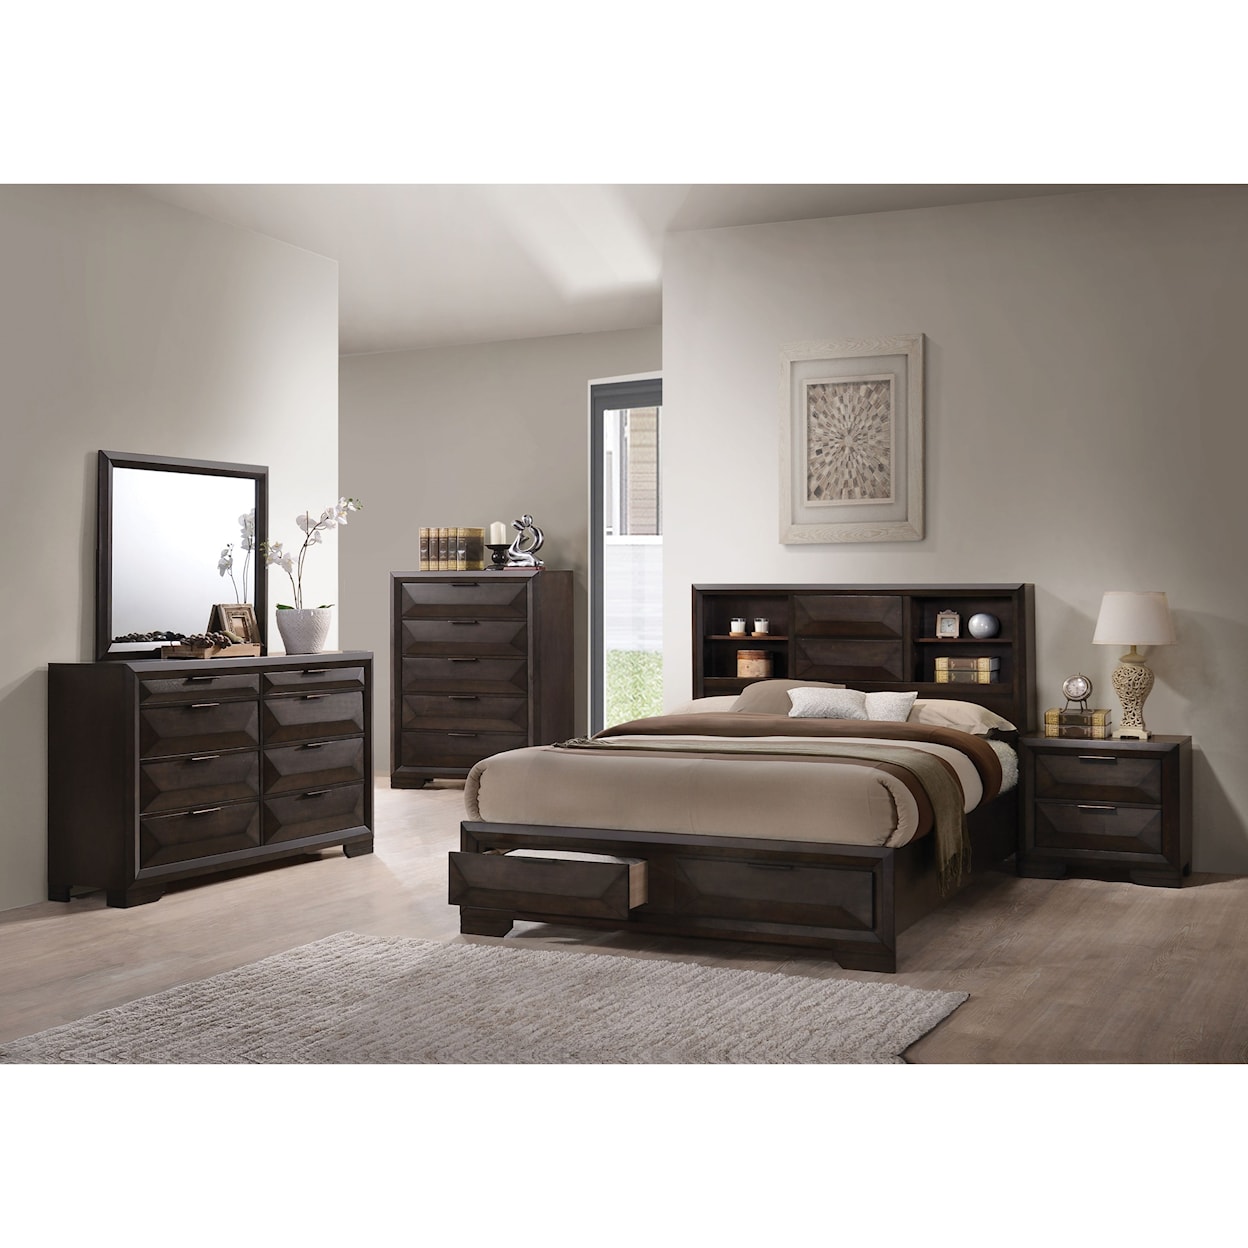 Acme Furniture Merveille Queen Bedroom Group